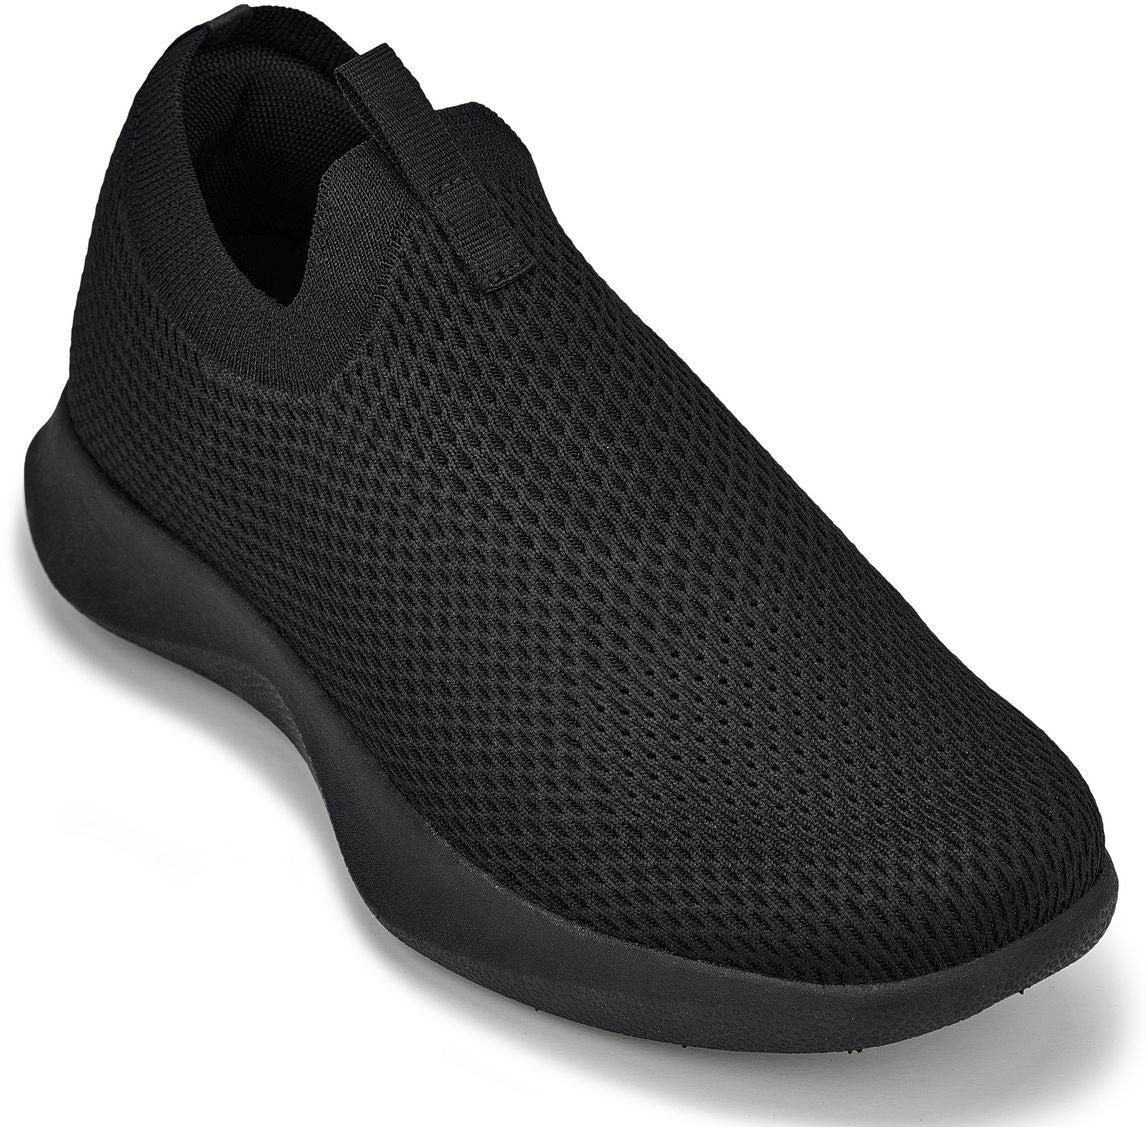 CALTO - Q071 - 2,4 pulgadas más alto (Negro) - Zapatillas ligeras sin cordones